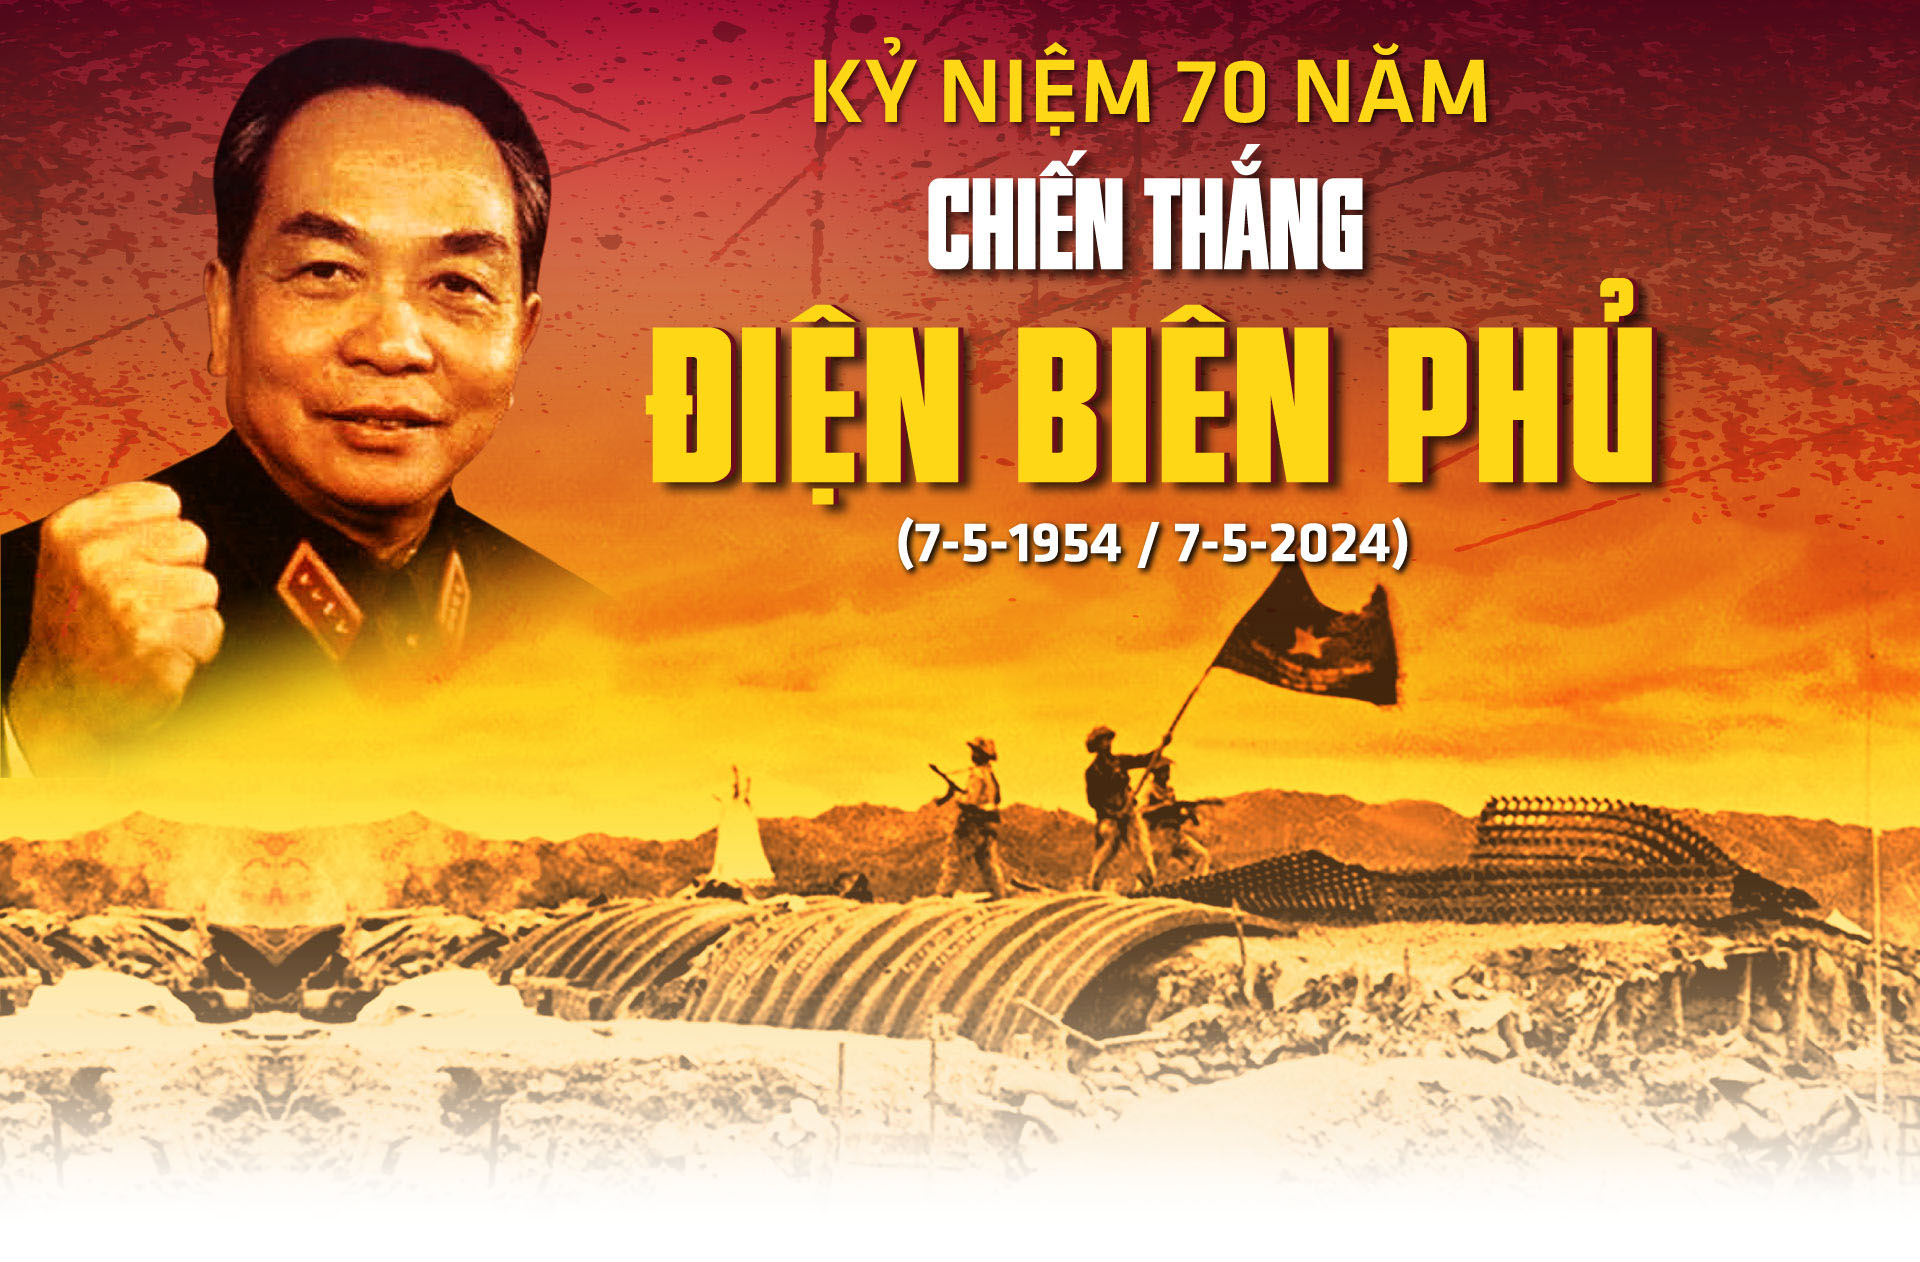 Chiến thắng lịch sử Điện Biên Phủ mang tầm vóc thời đại